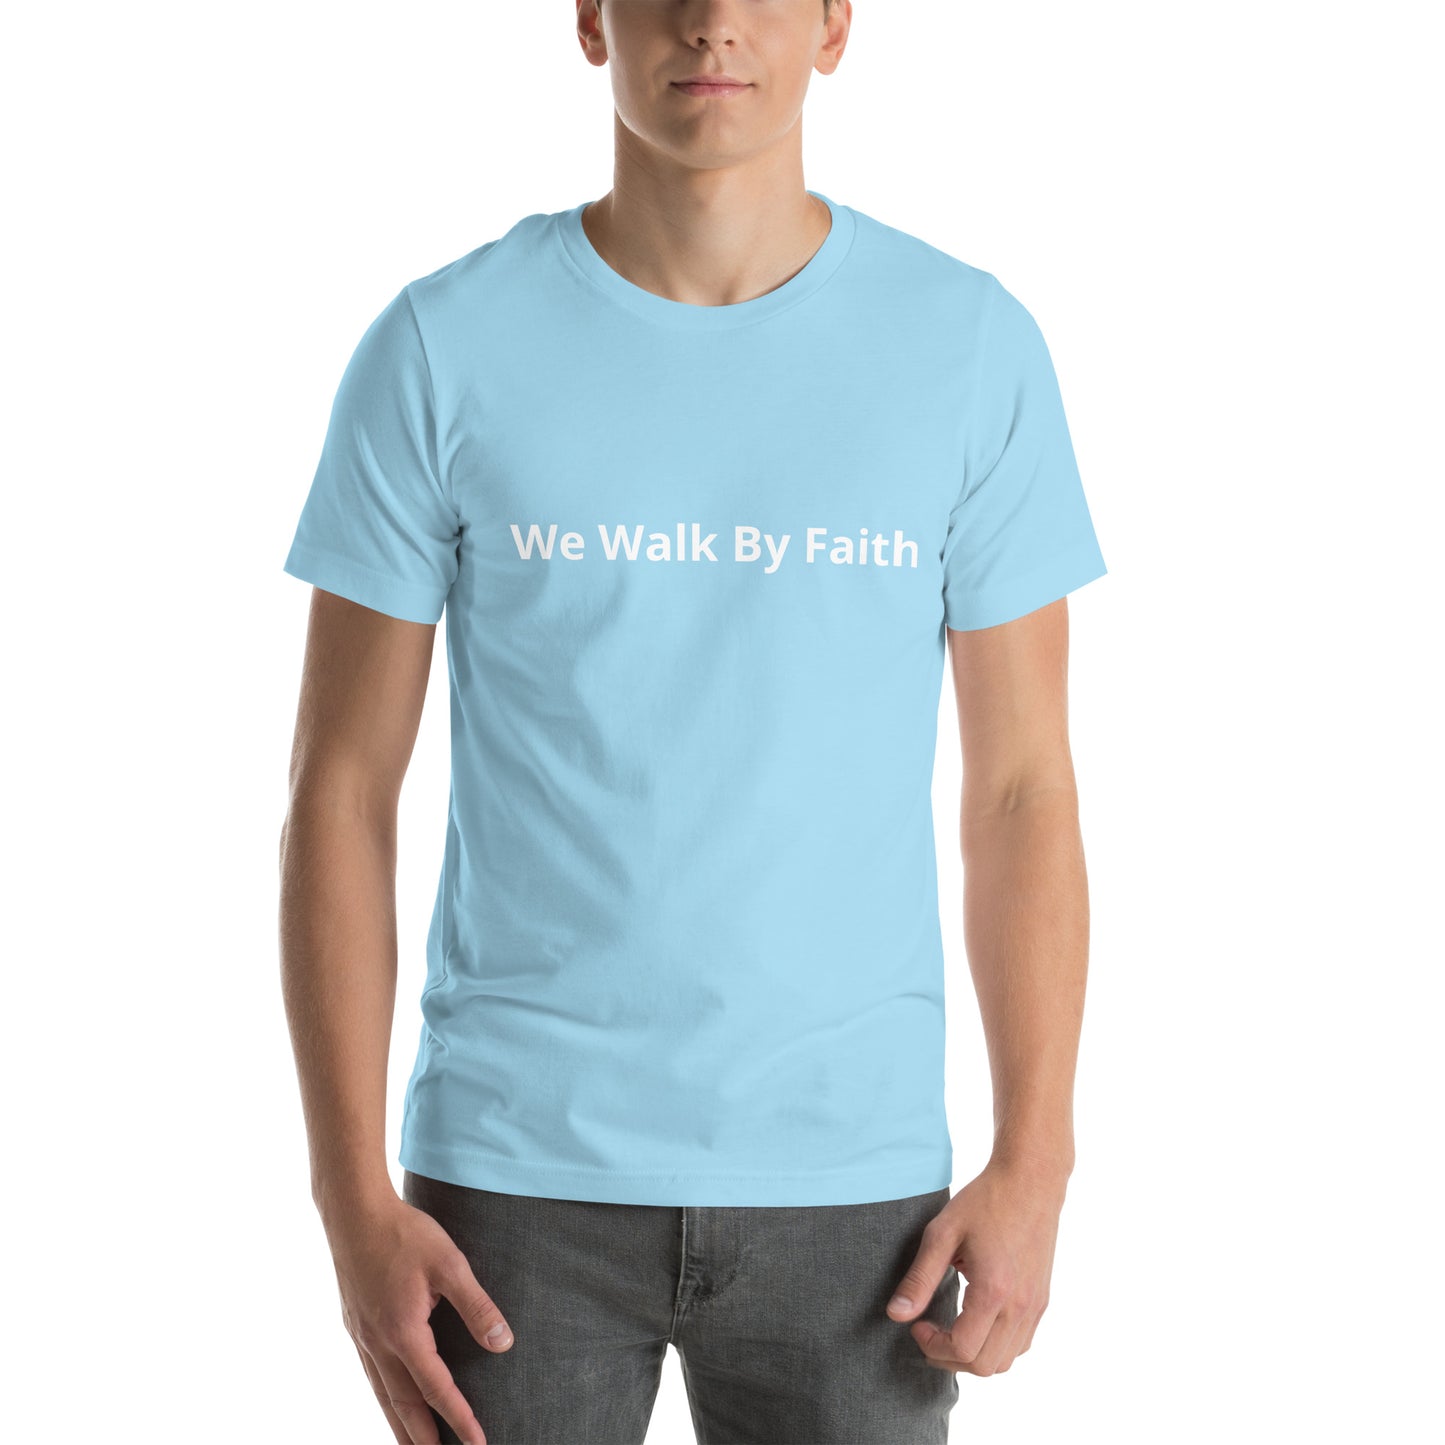 We Walk By Faith Unisex t-shirt